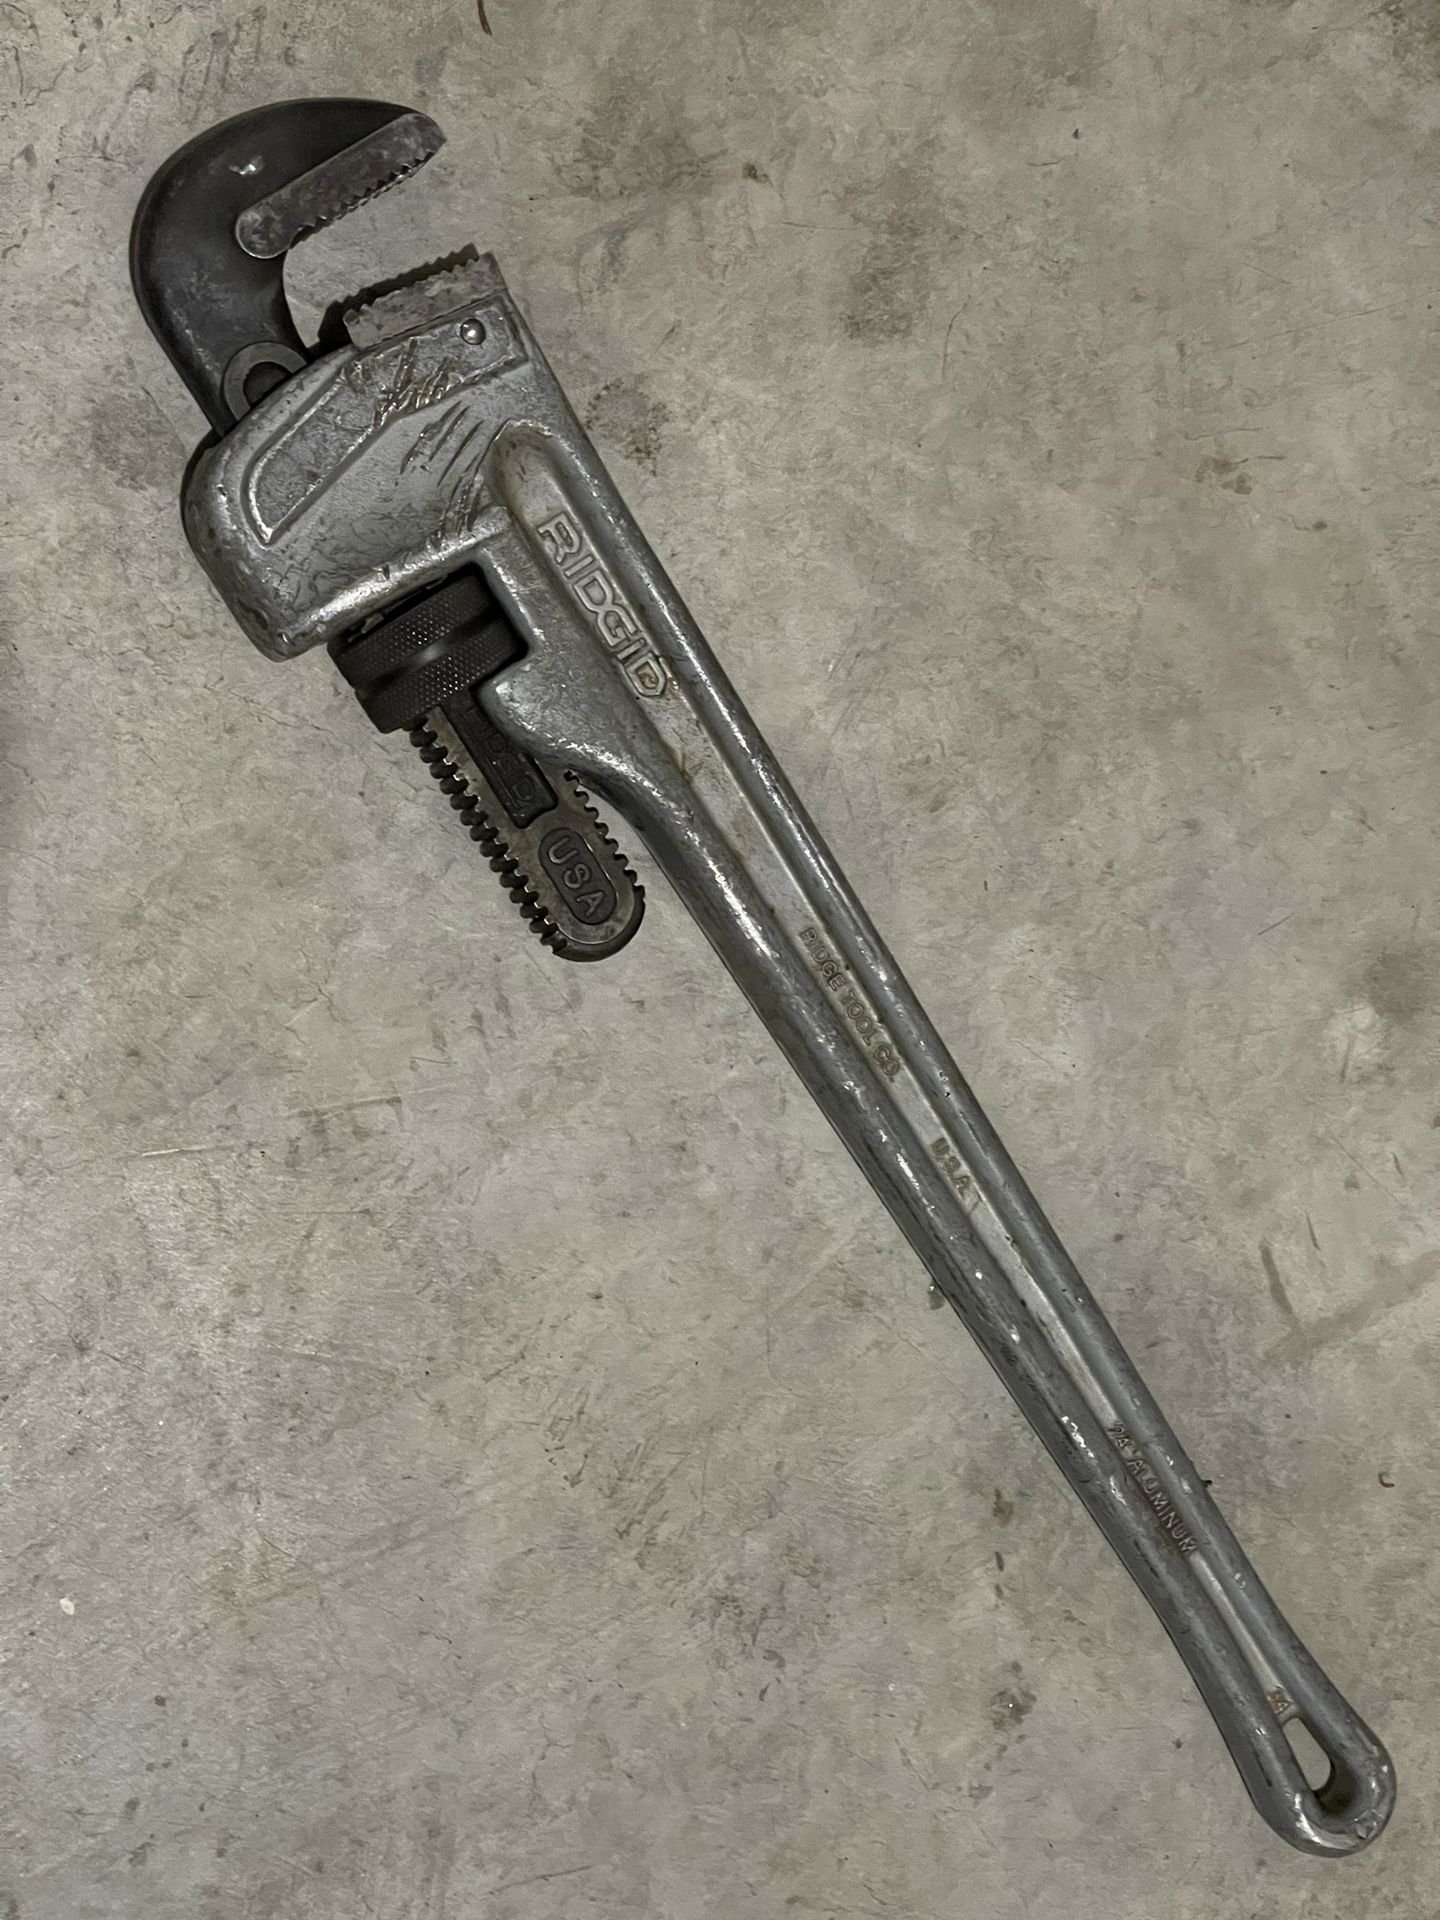 24” Rigid Aluminum Pipe Wrench